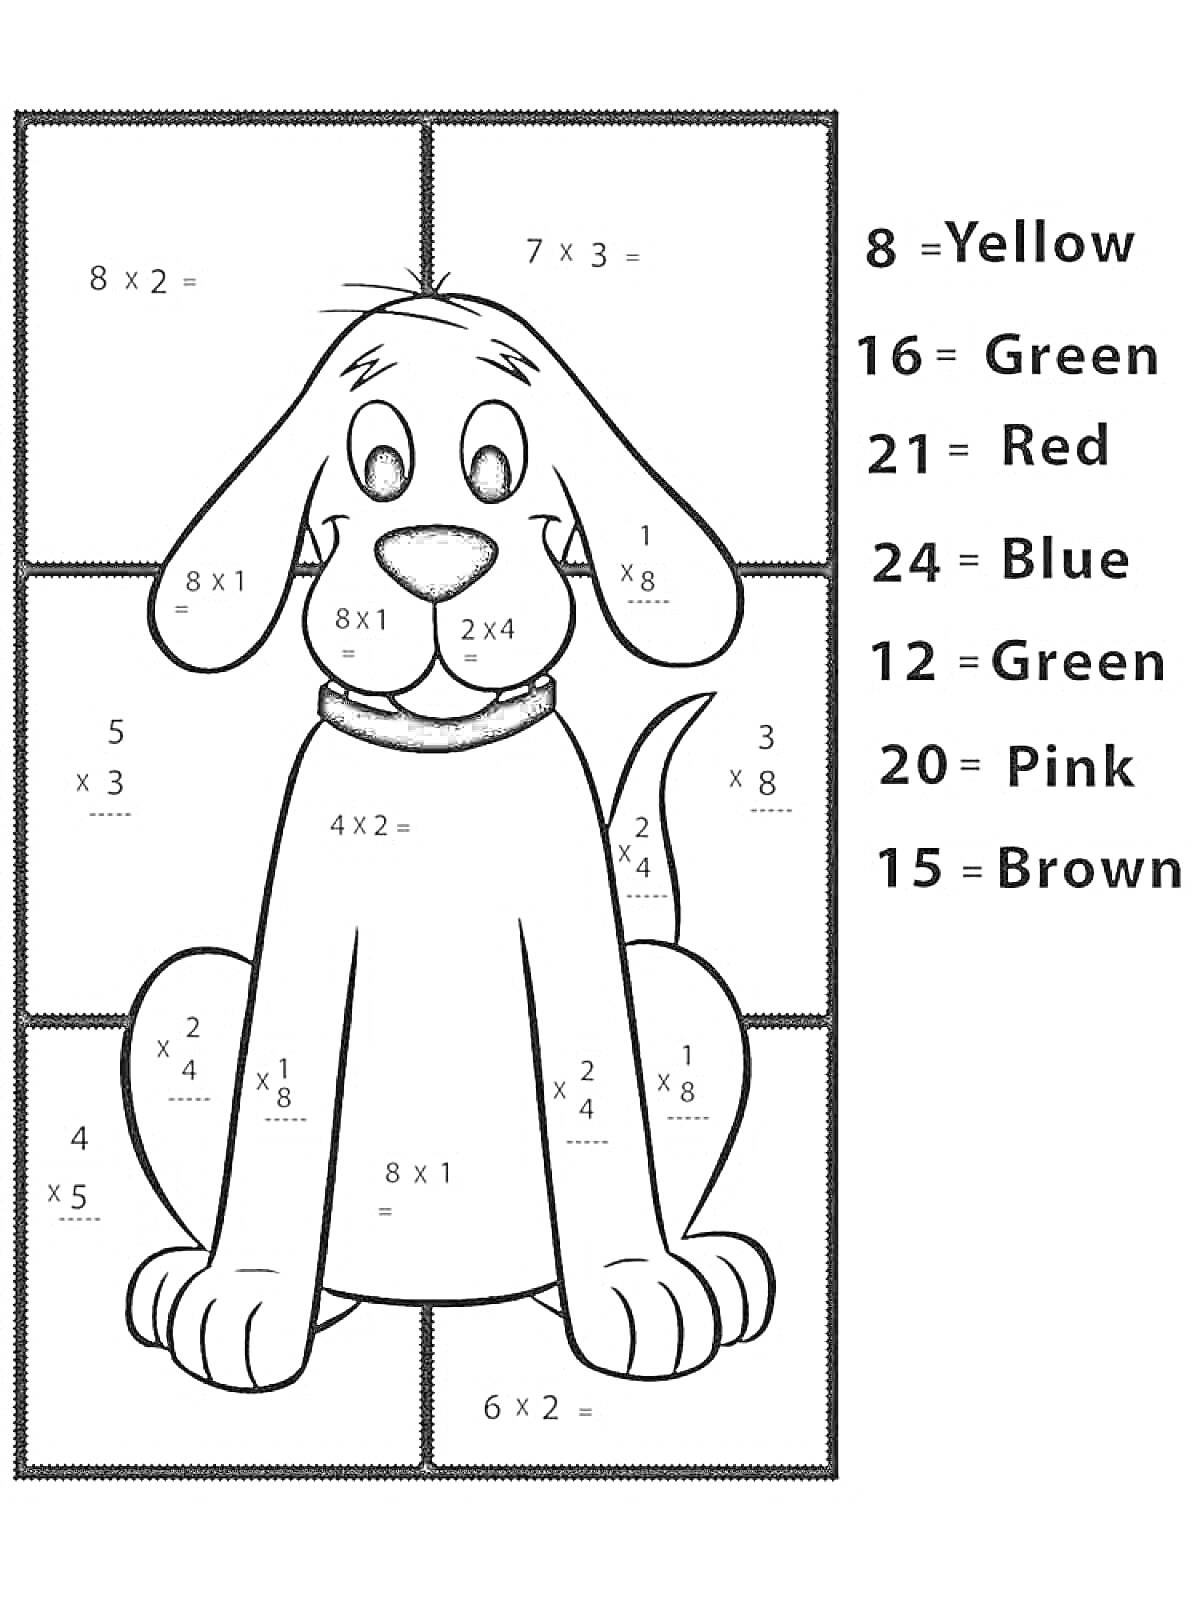 Раскраска Раскраска с примерами на умножение с собакой и кодом цветов для раскрашивания